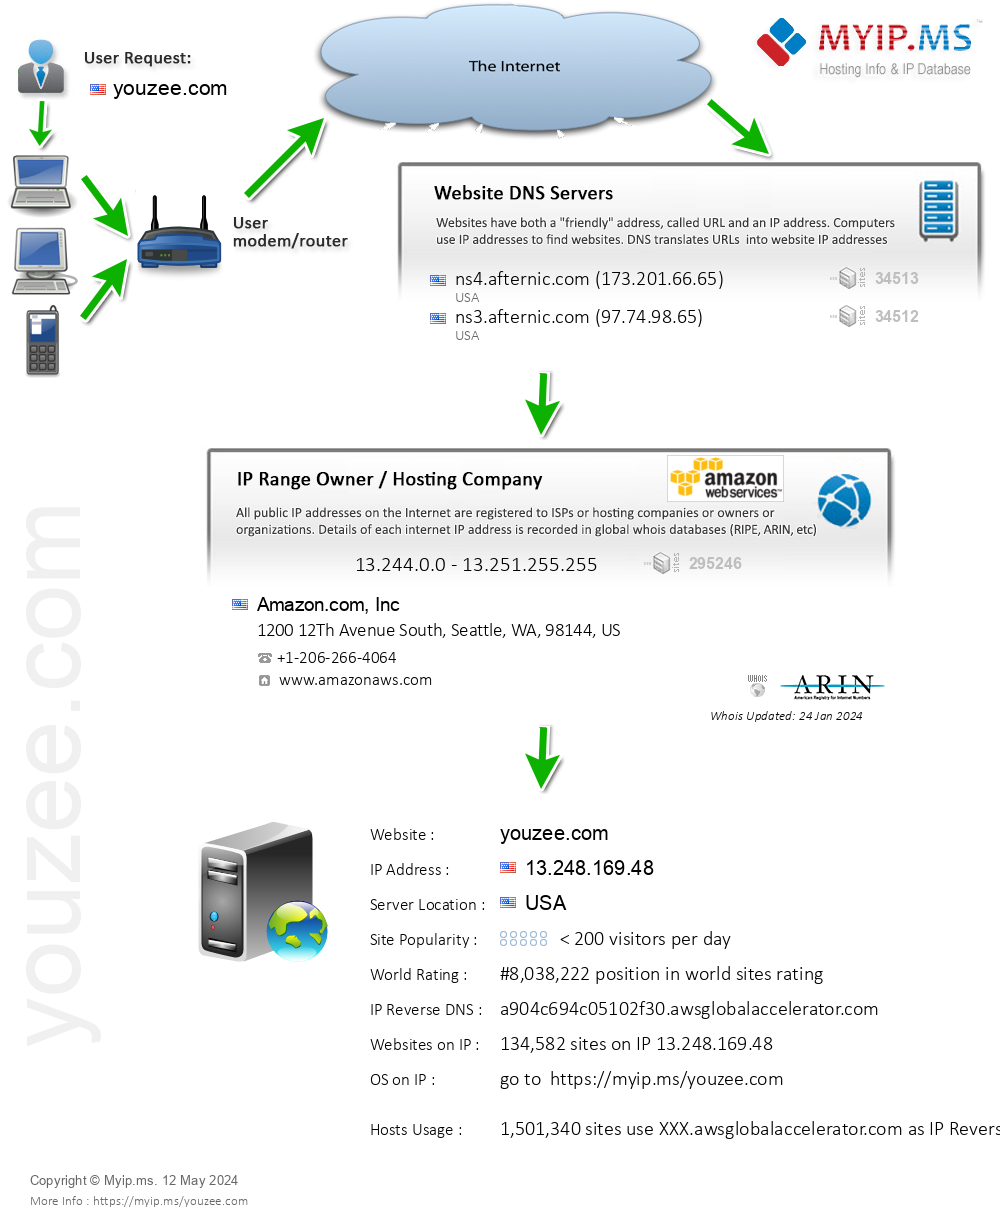 Youzee.com - Website Hosting Visual IP Diagram